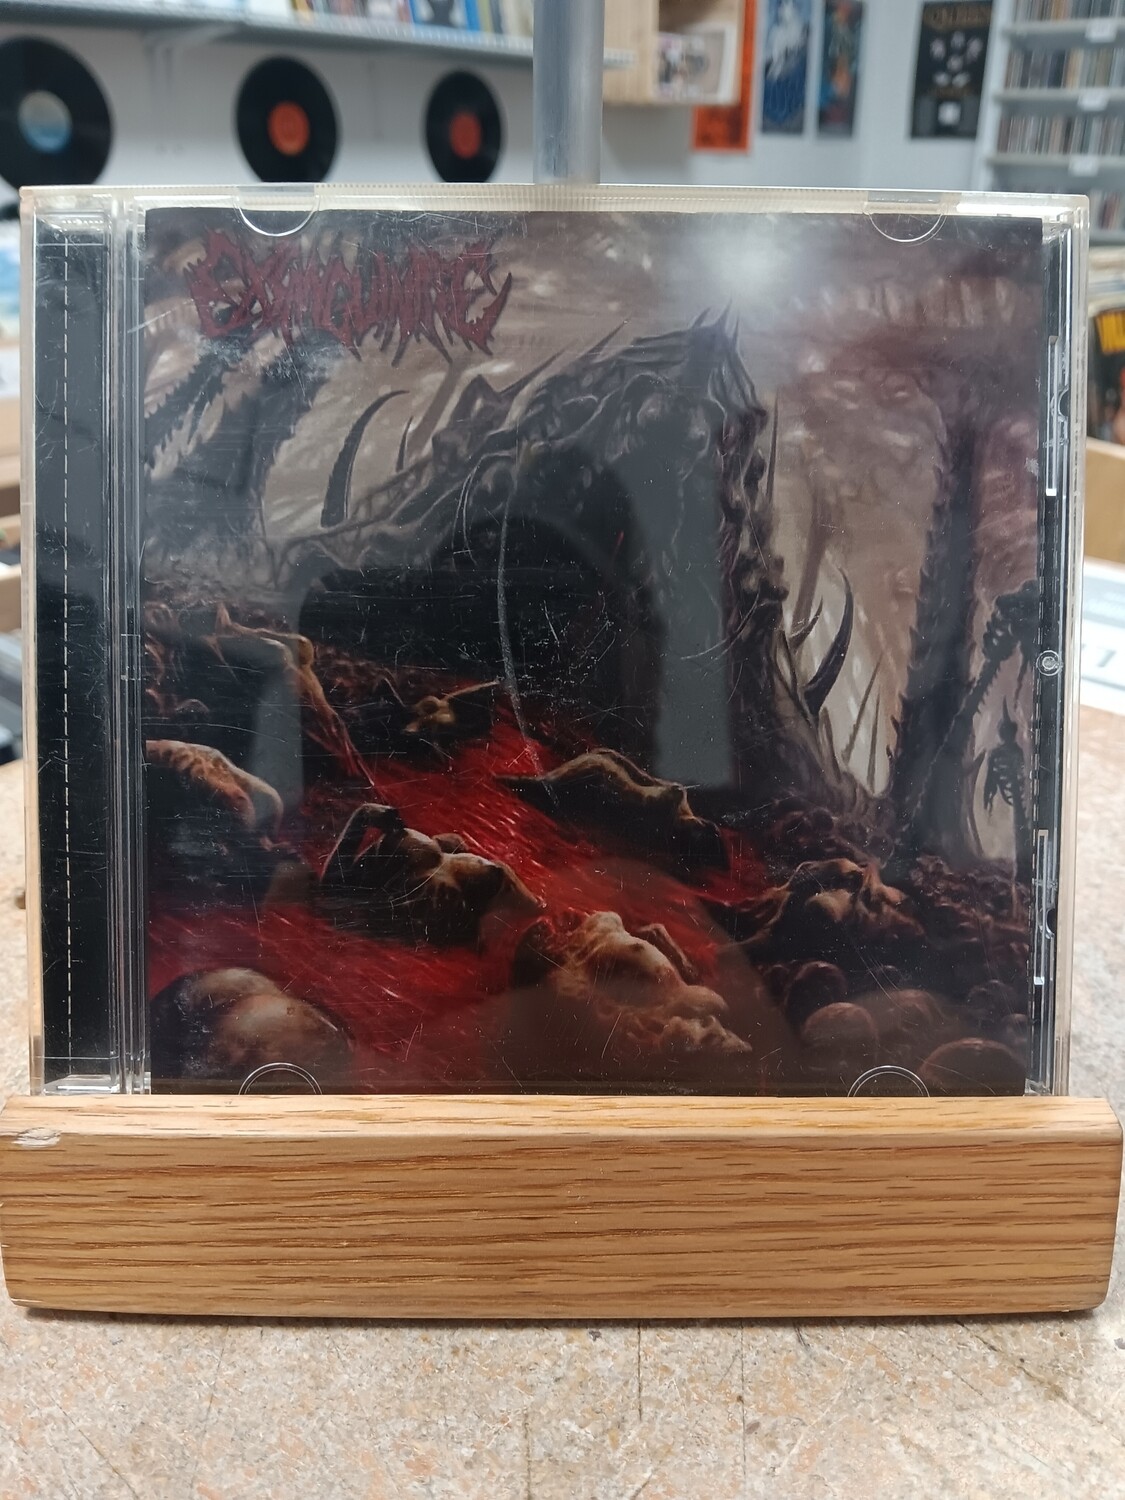 Exsanguinate - Disintegration through ritualistic torture (CD)